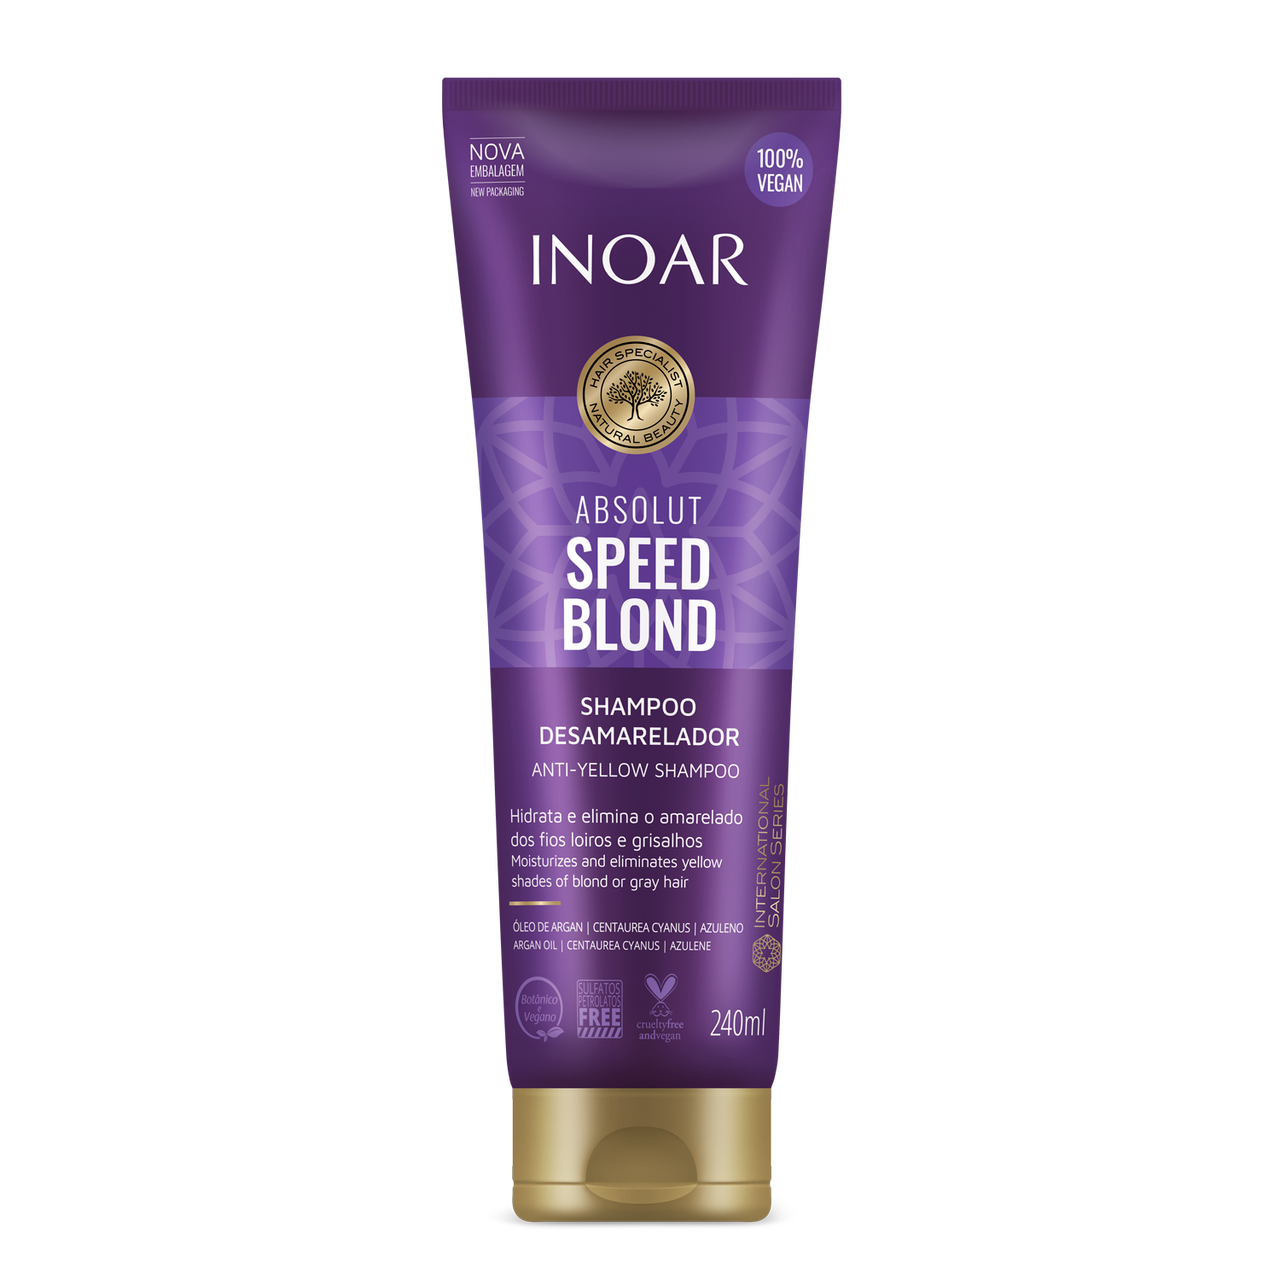 INOAR Absolut Speed Blond Shampoo - šampūnas šviesiems plaukams 240 ml